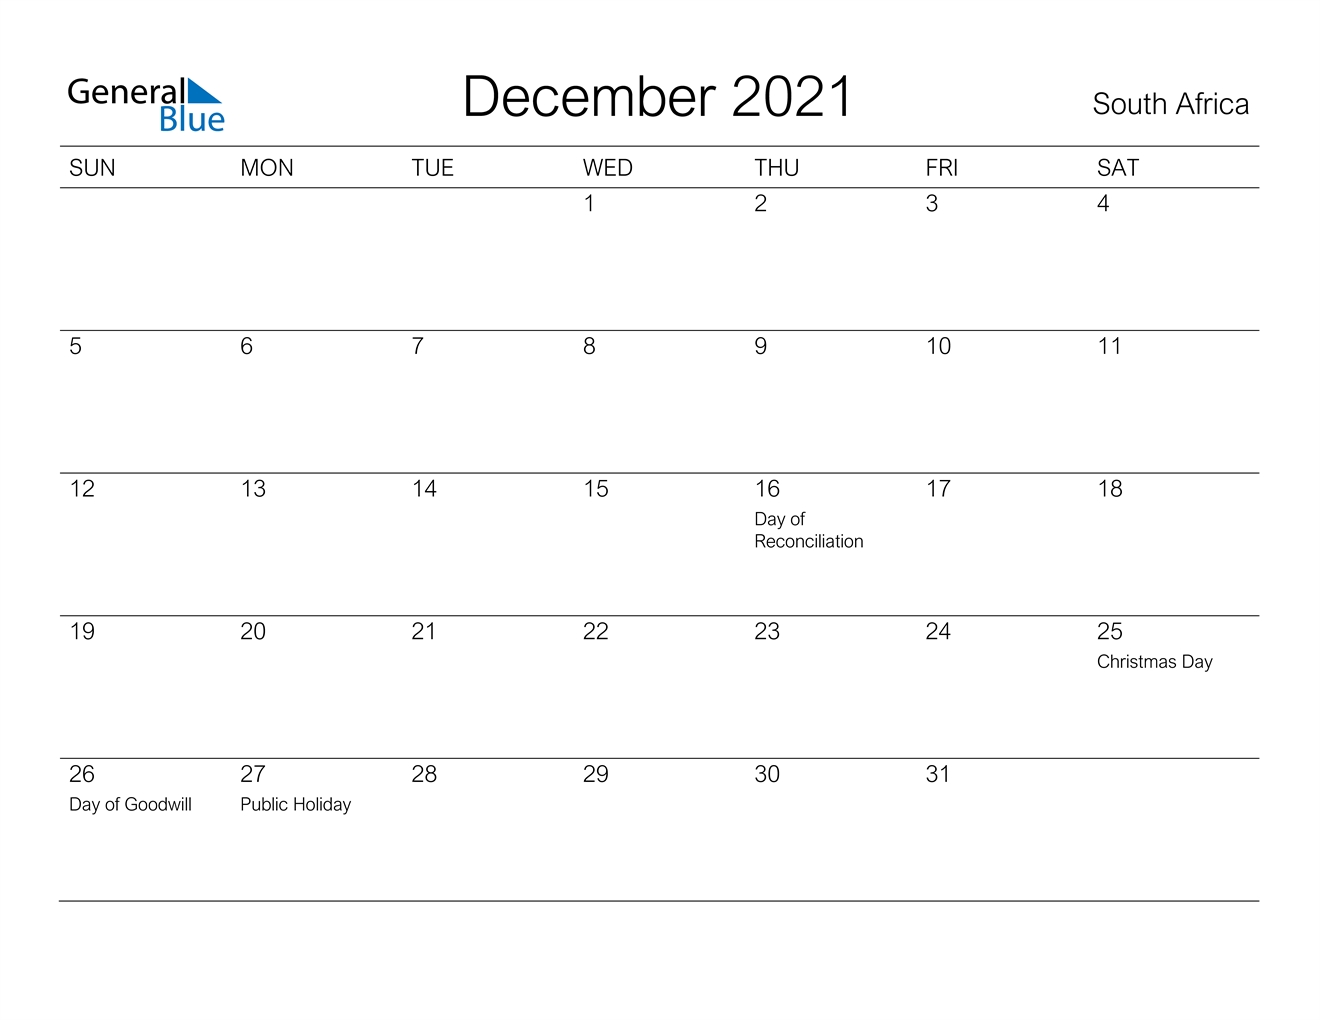 December 2021 Calendar - South Africa